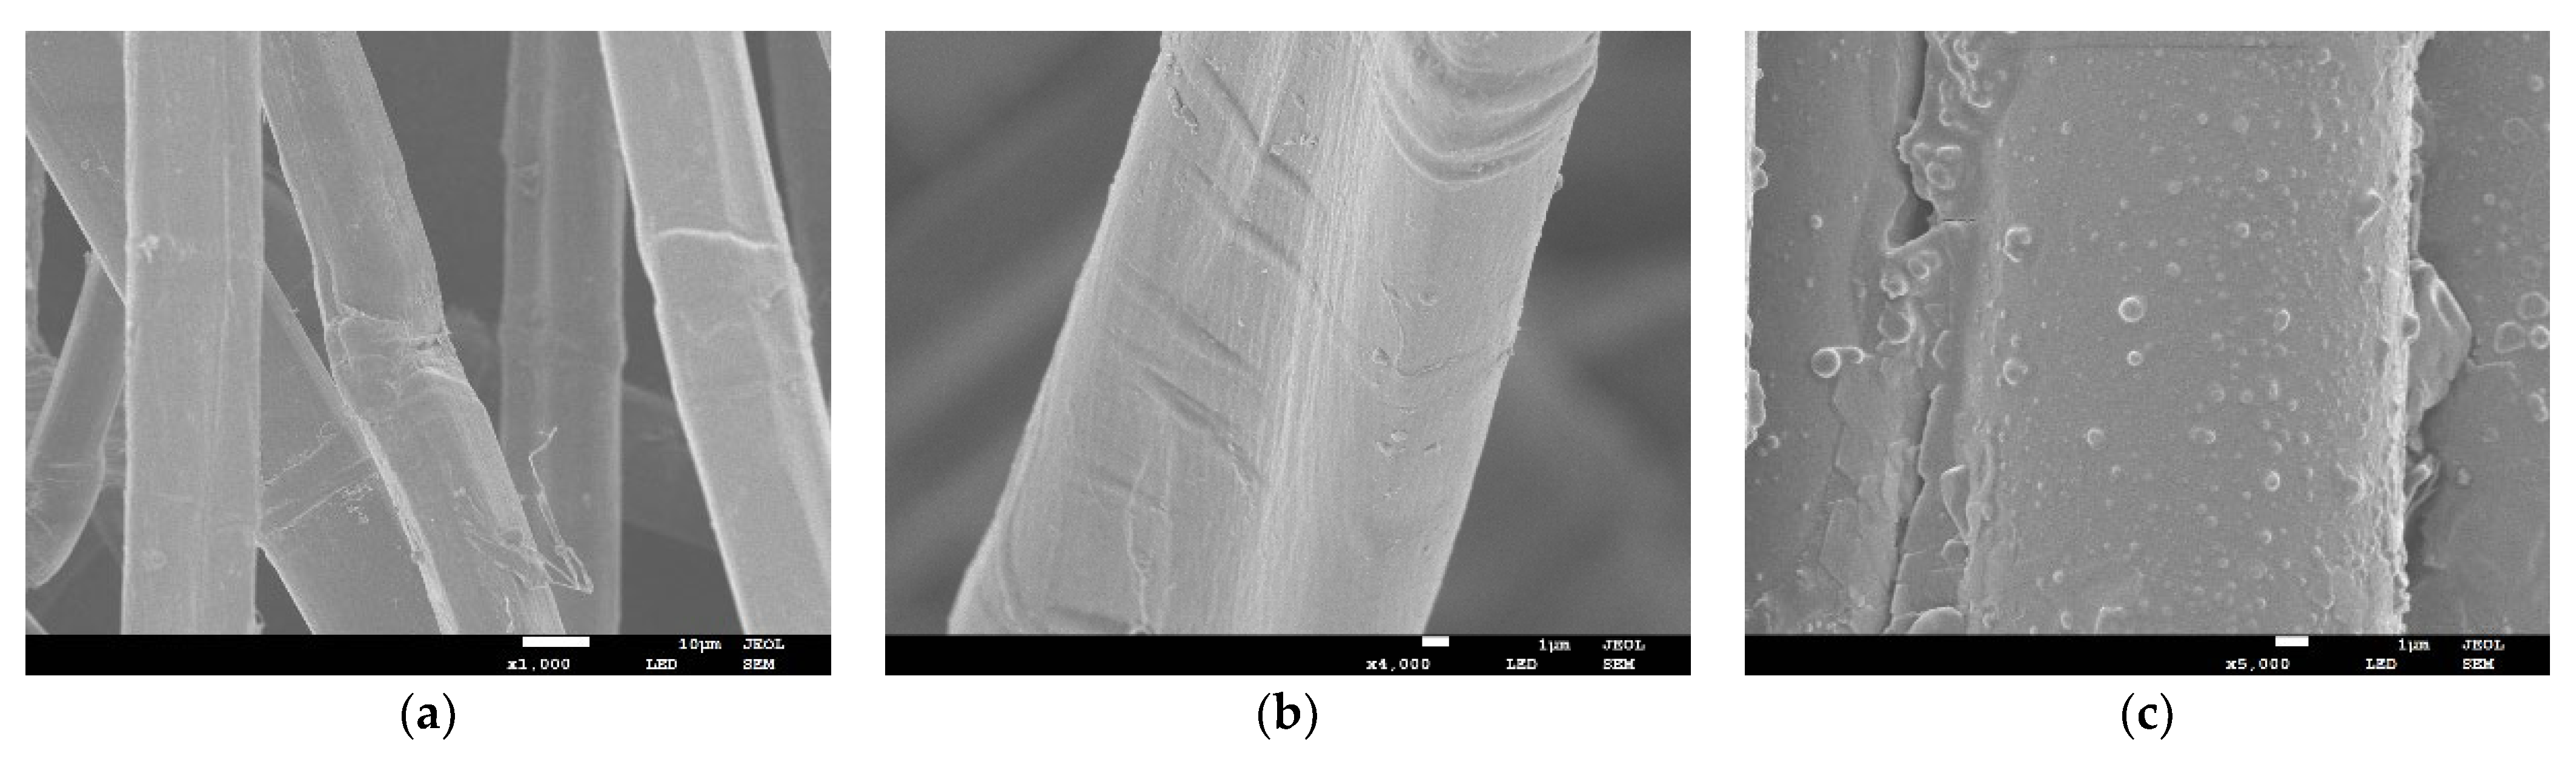 hemp fiber microscopic